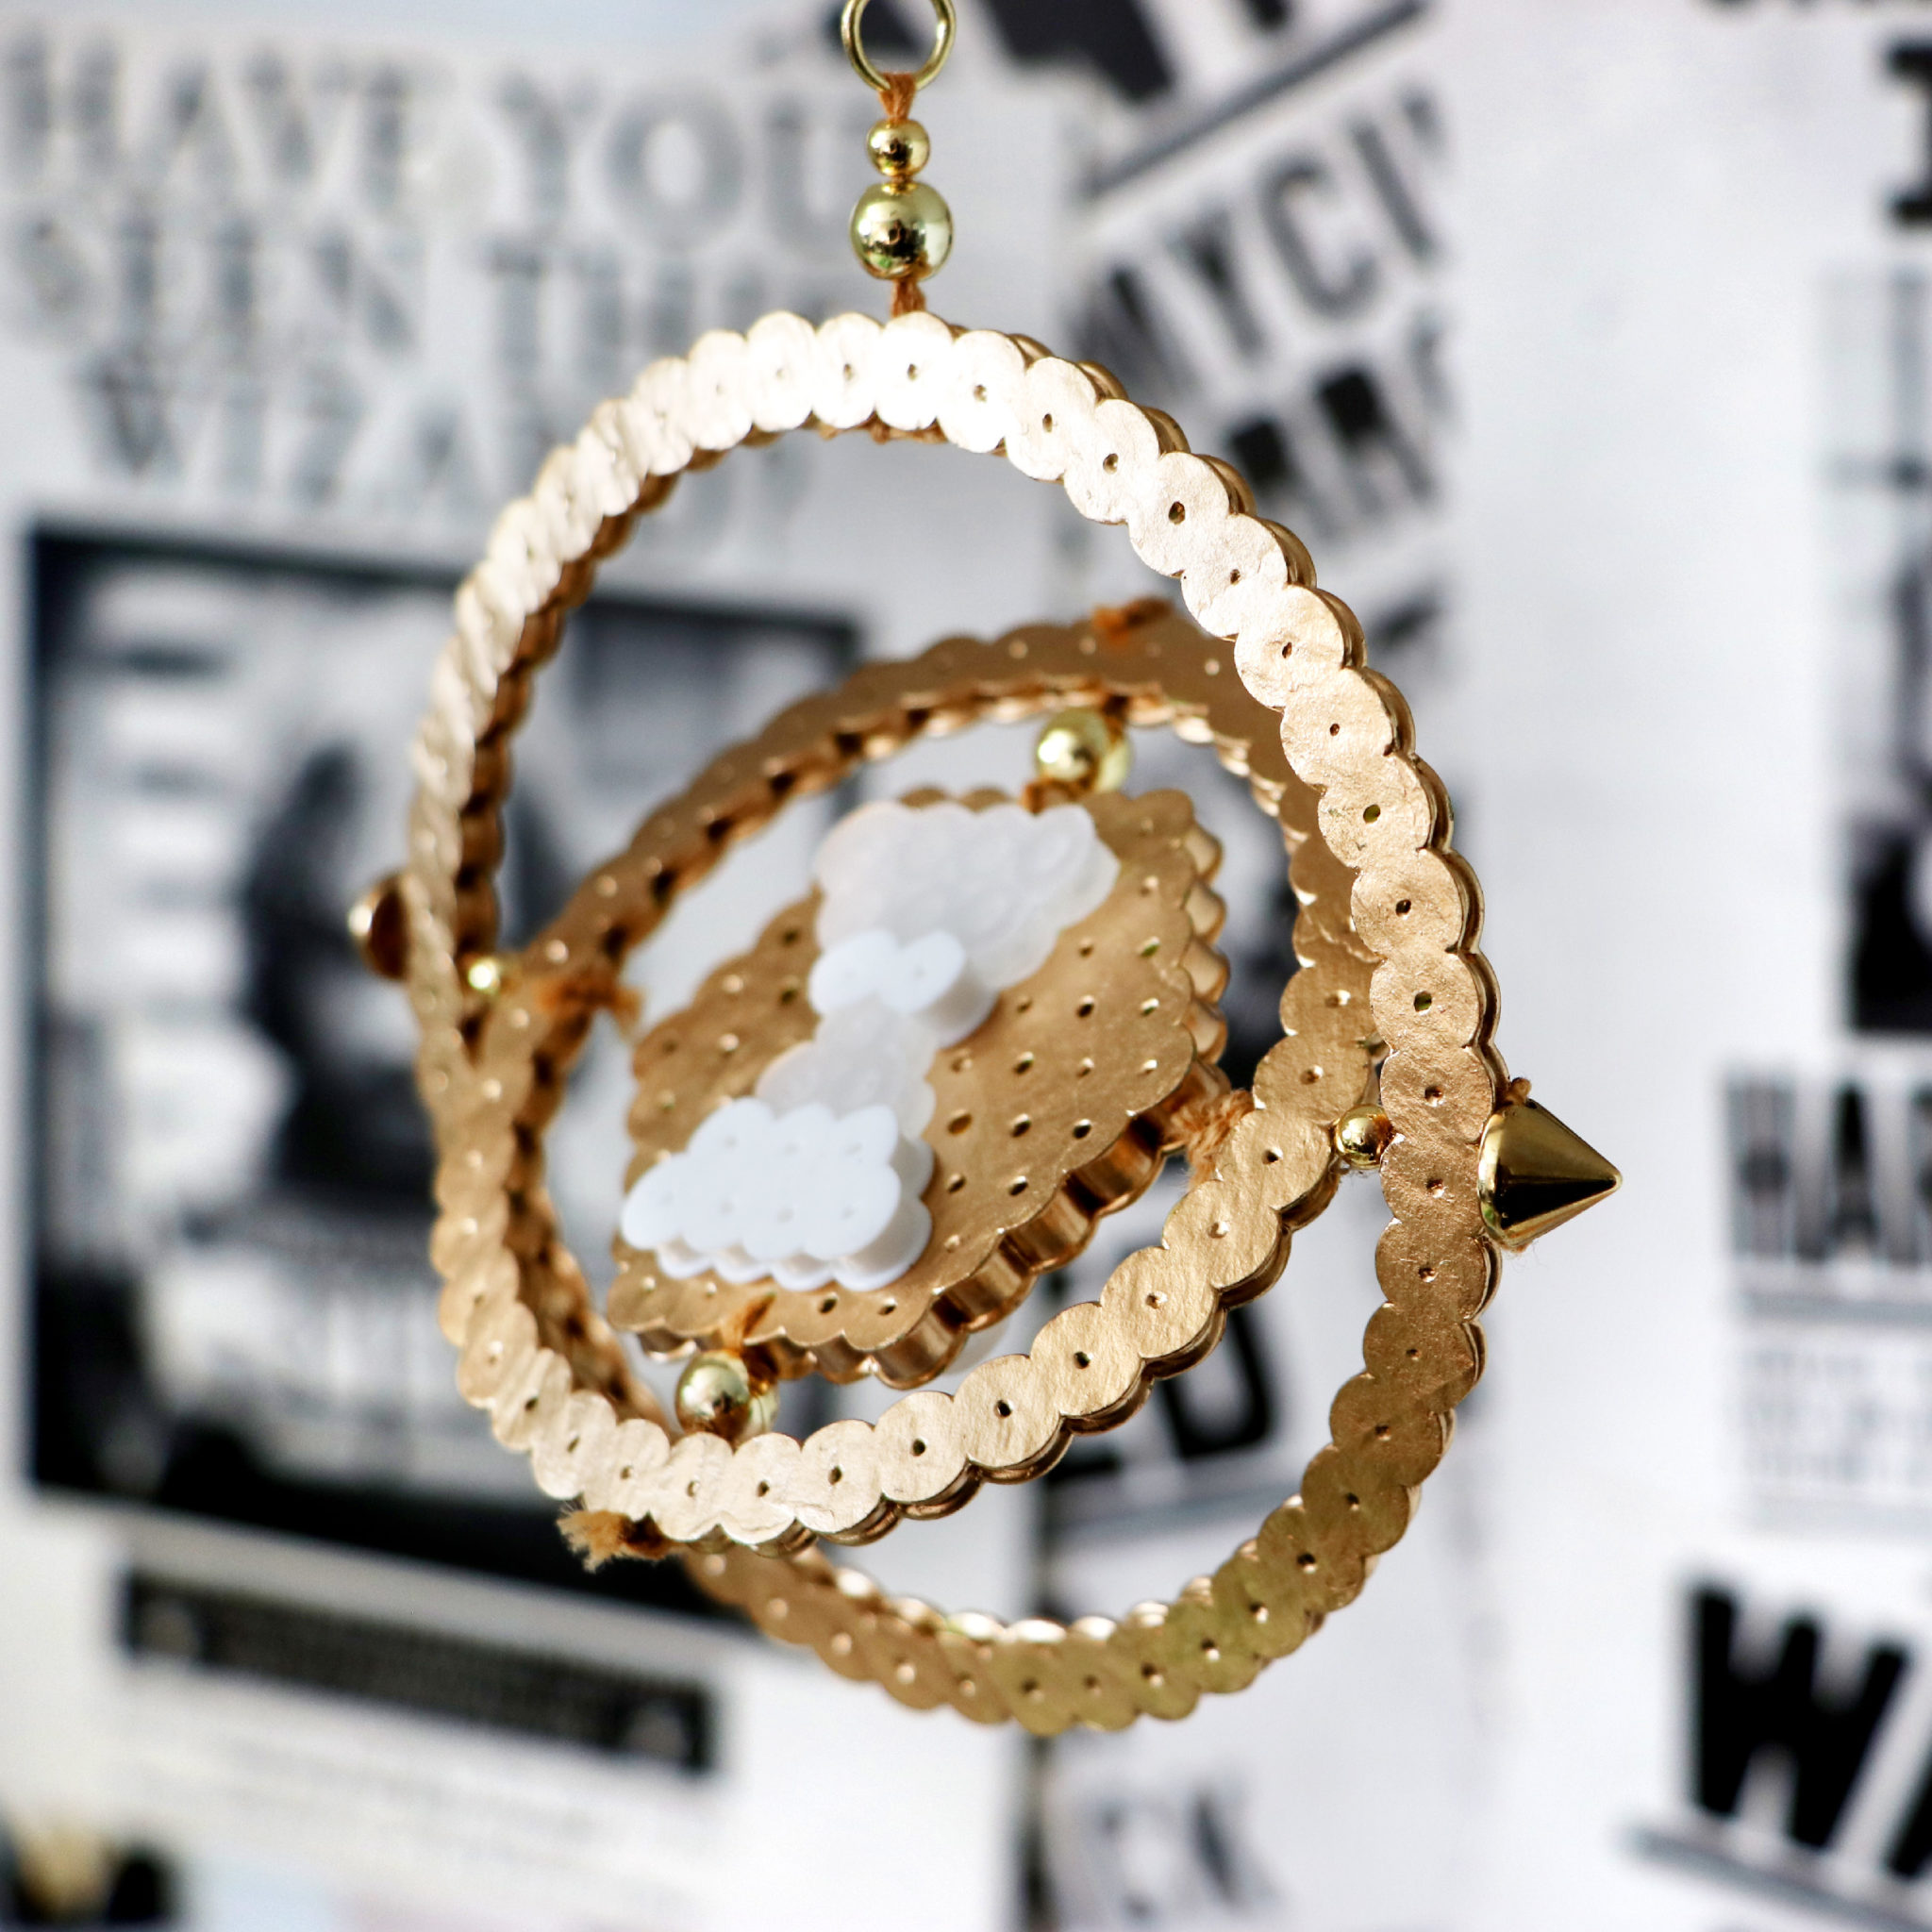 DIY Harry Potter Time Turner Made From Perler Beads! - Karen Kavett